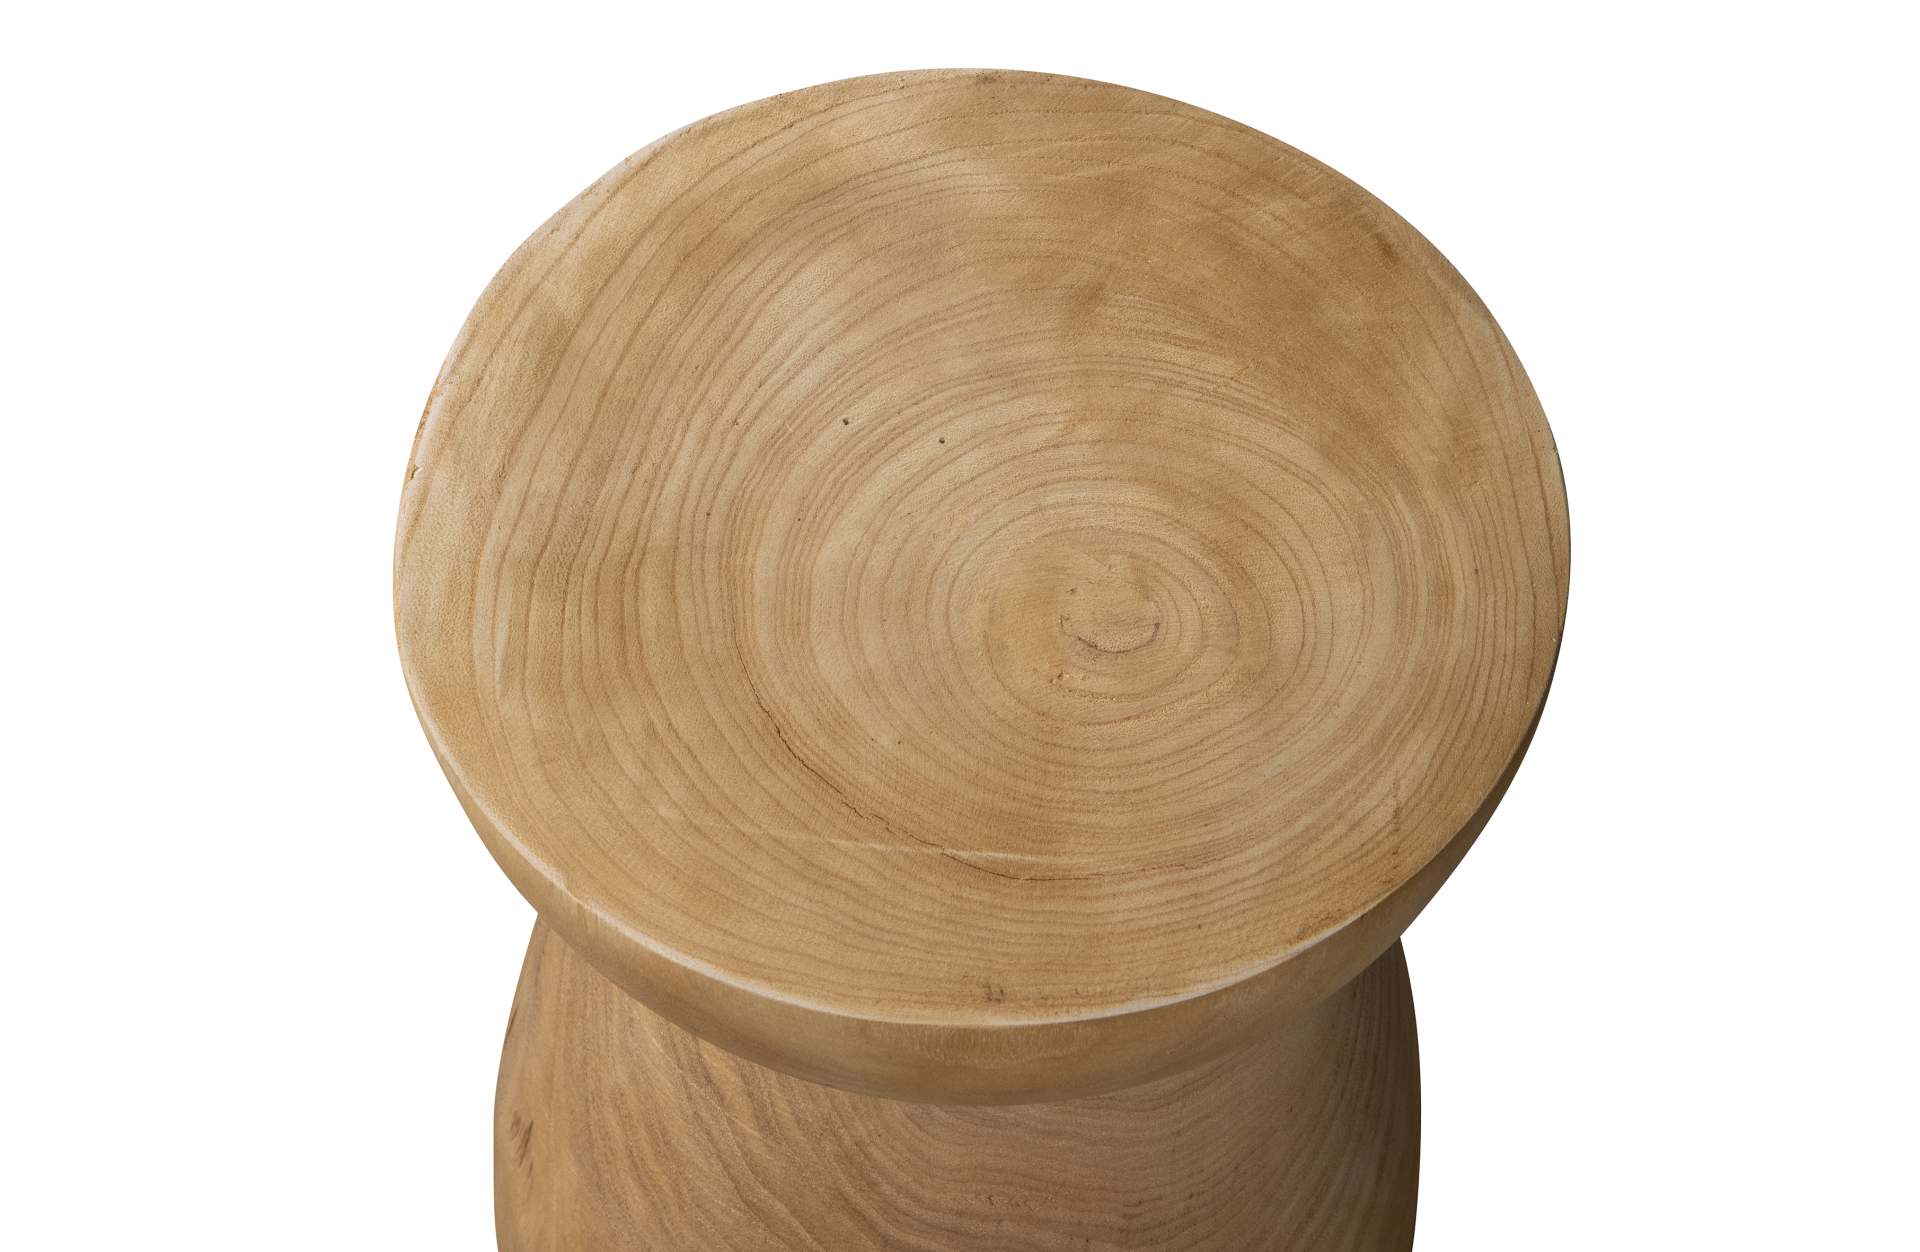 Der Hocker Bink überzeugt mit seinem klassischen Design. Gefertigt wurde er aus Paulowniaholz, welches einen natürlichen Farbton besitzen. Der Hocker hat einen Durchmesser von 28 cm.